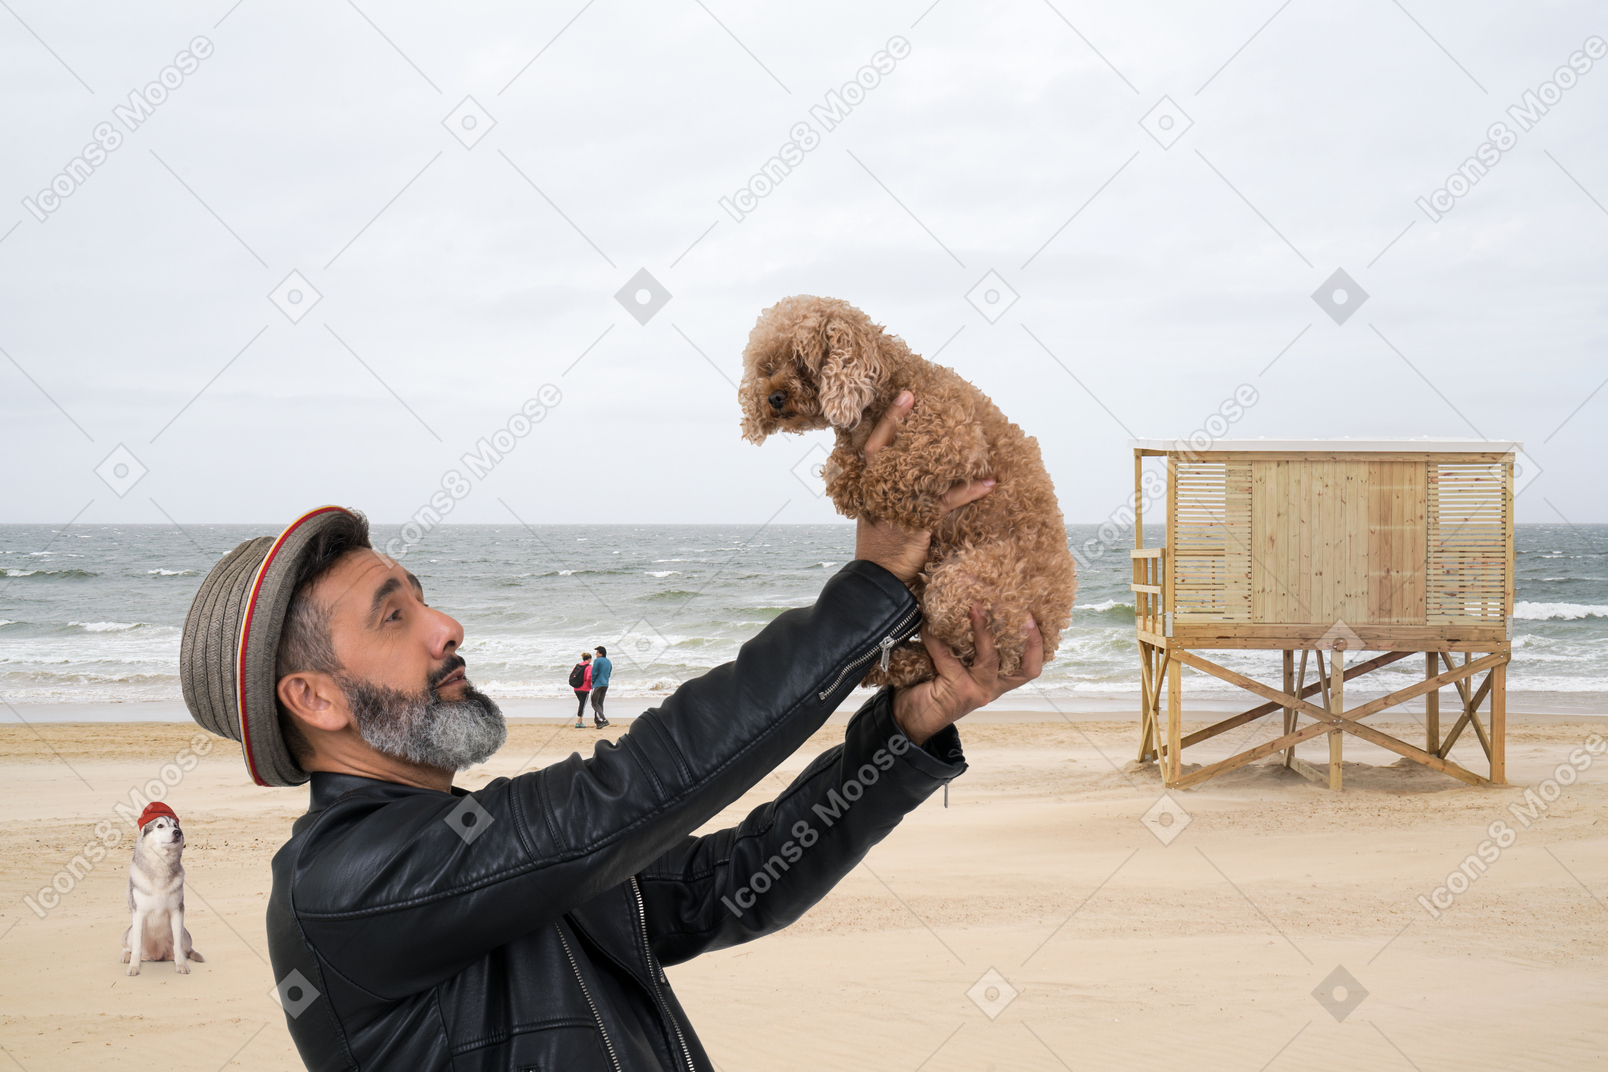 Man looking at his dog at the beach